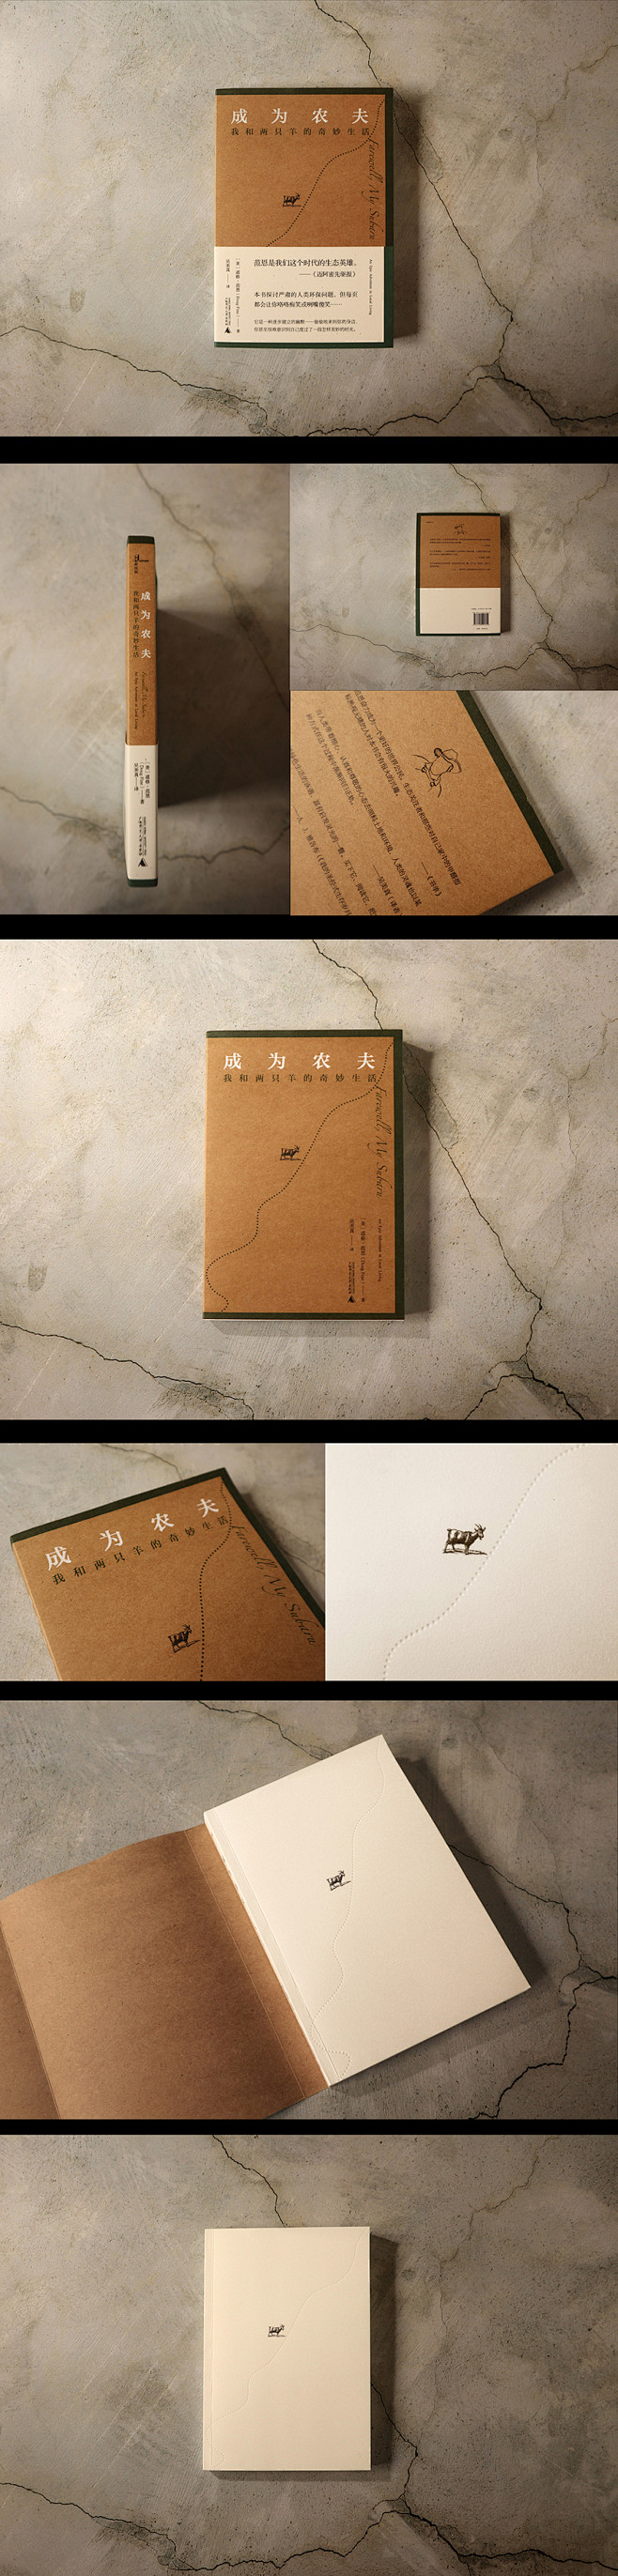 书籍封面设计-正式出版物合集01-古田路...